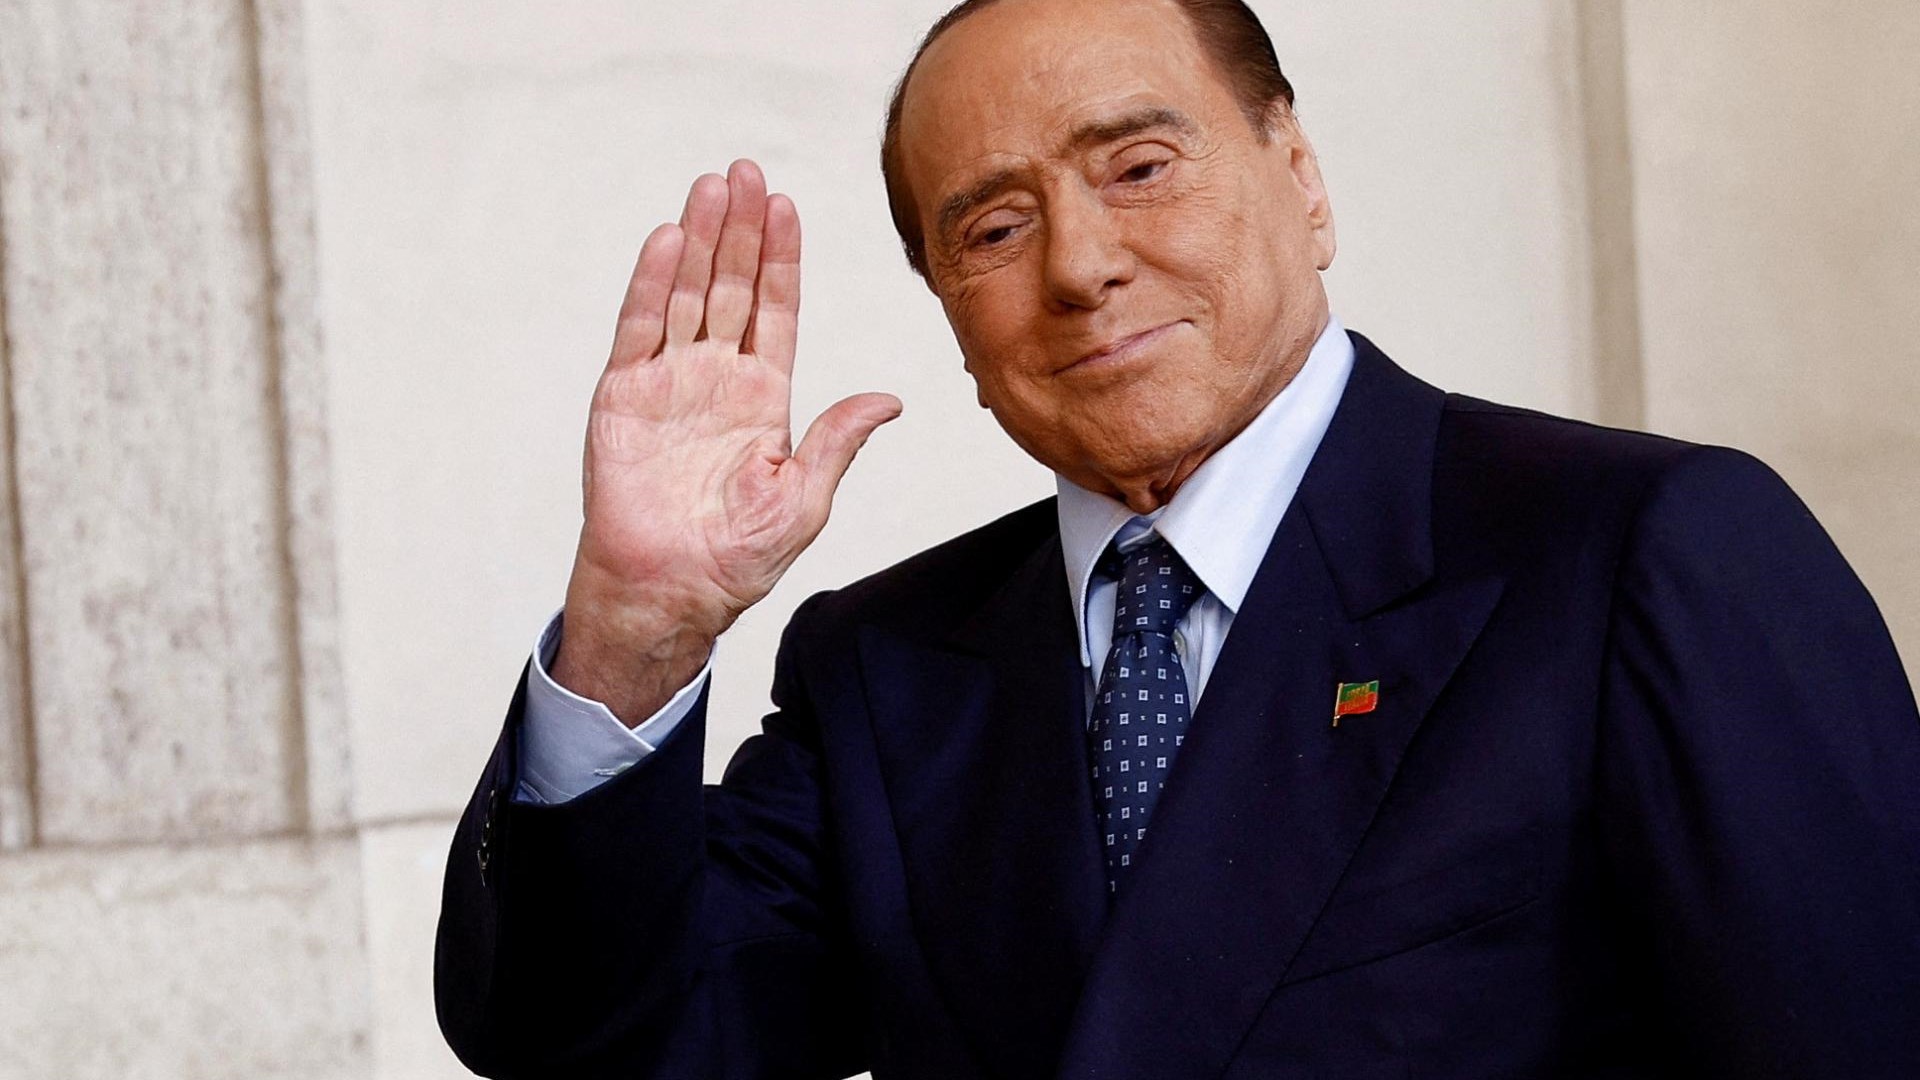 Berlusconi a promis aux joueurs de Monza un « bus de prostituées » s’ils battaient la Juventus ou Milan